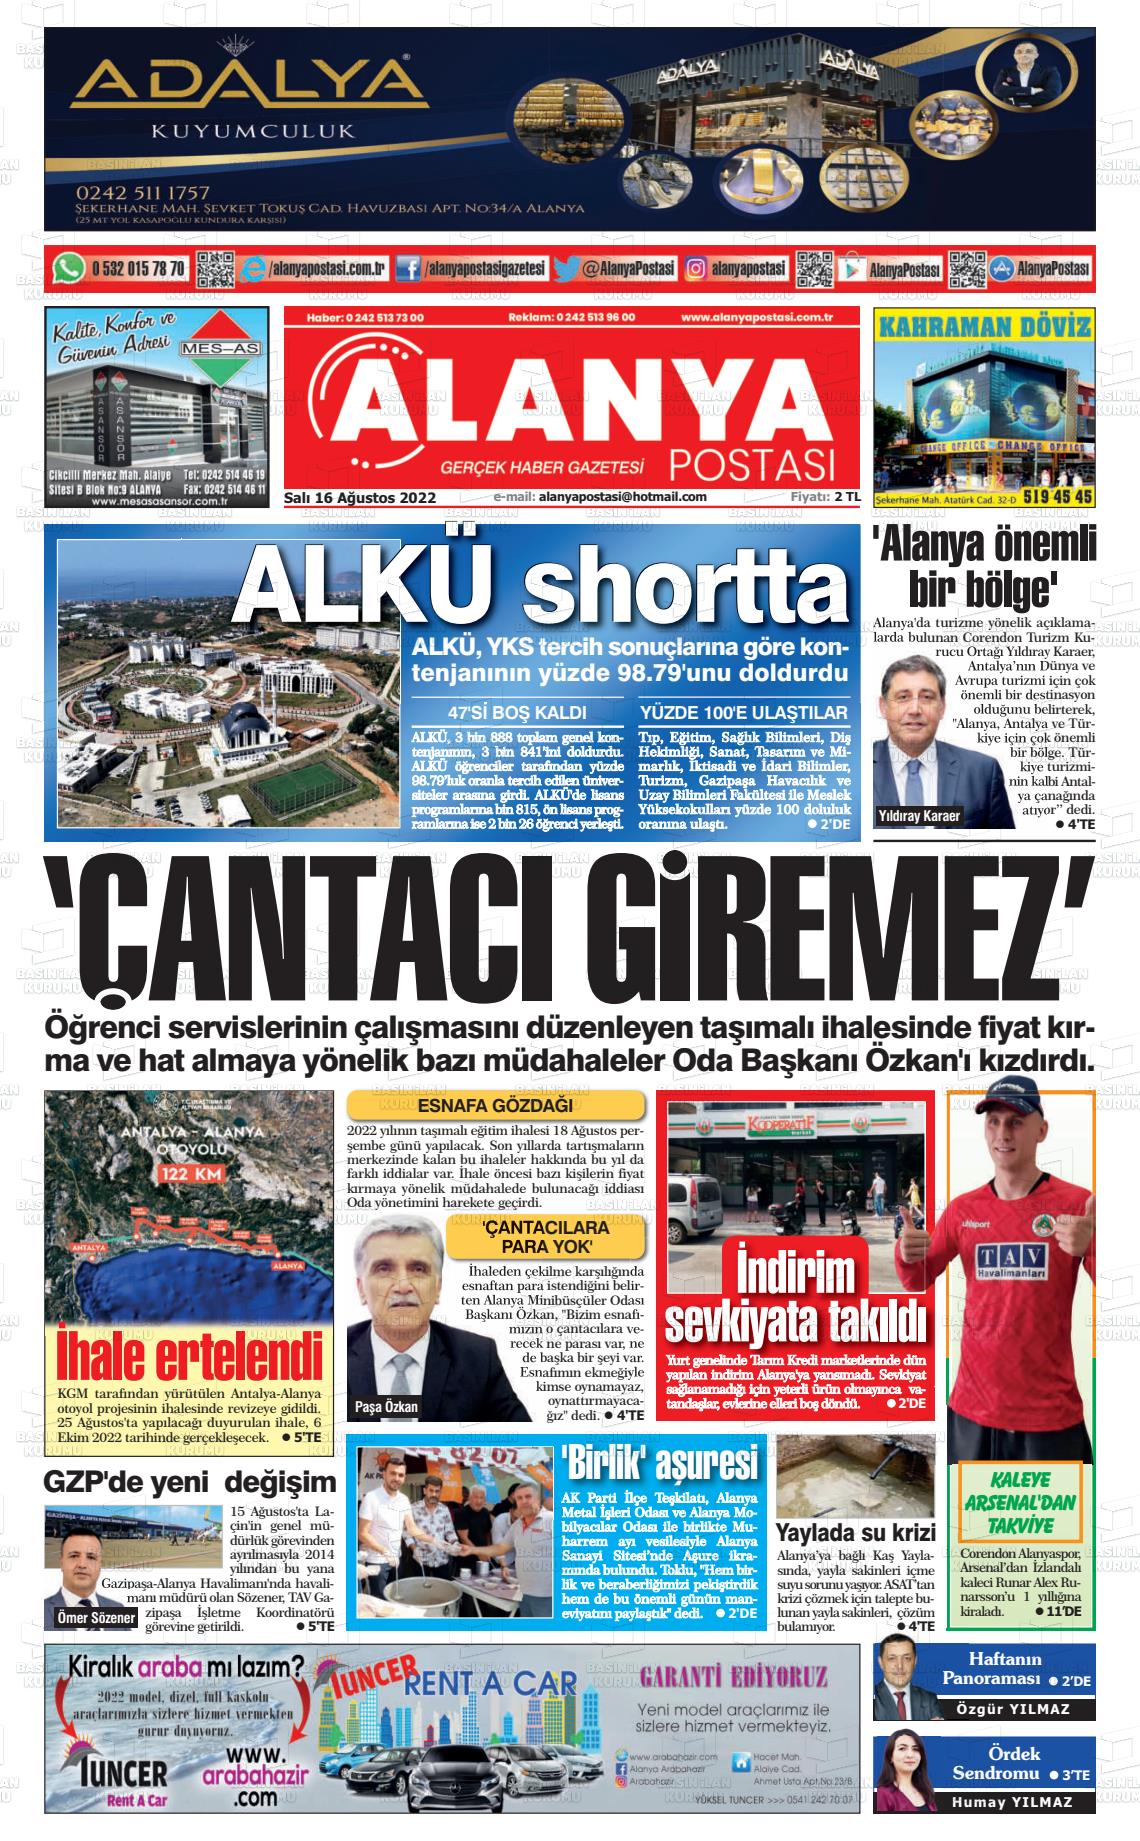 16 Ağustos 2022 Alanya Postası Gazete Manşeti